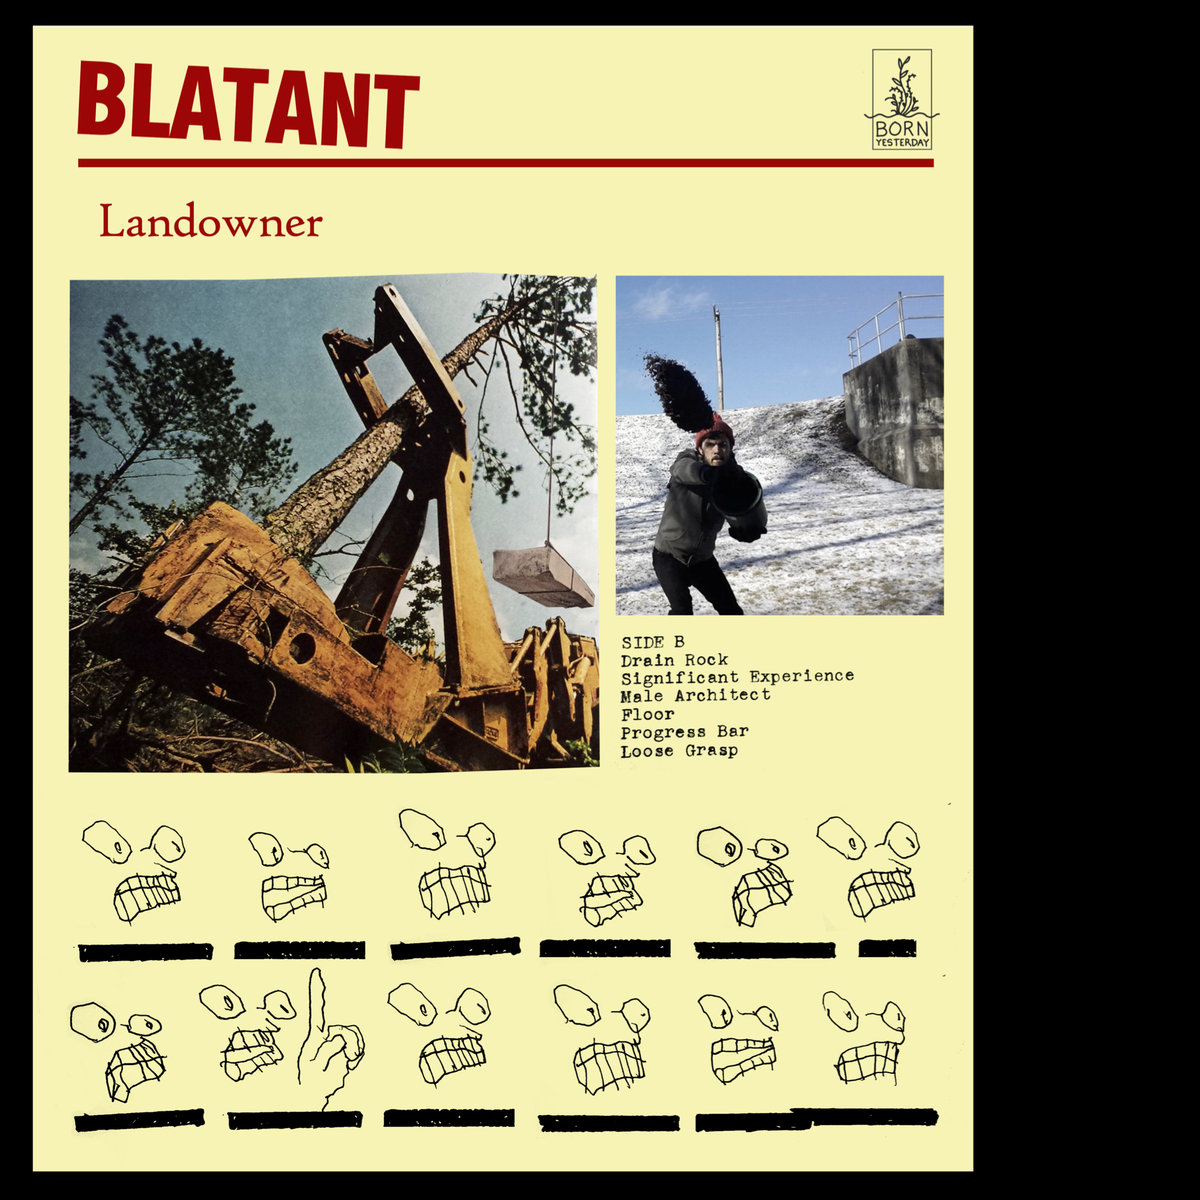 Basemental: Landowner’s new release, Blatant, skewers consumerism